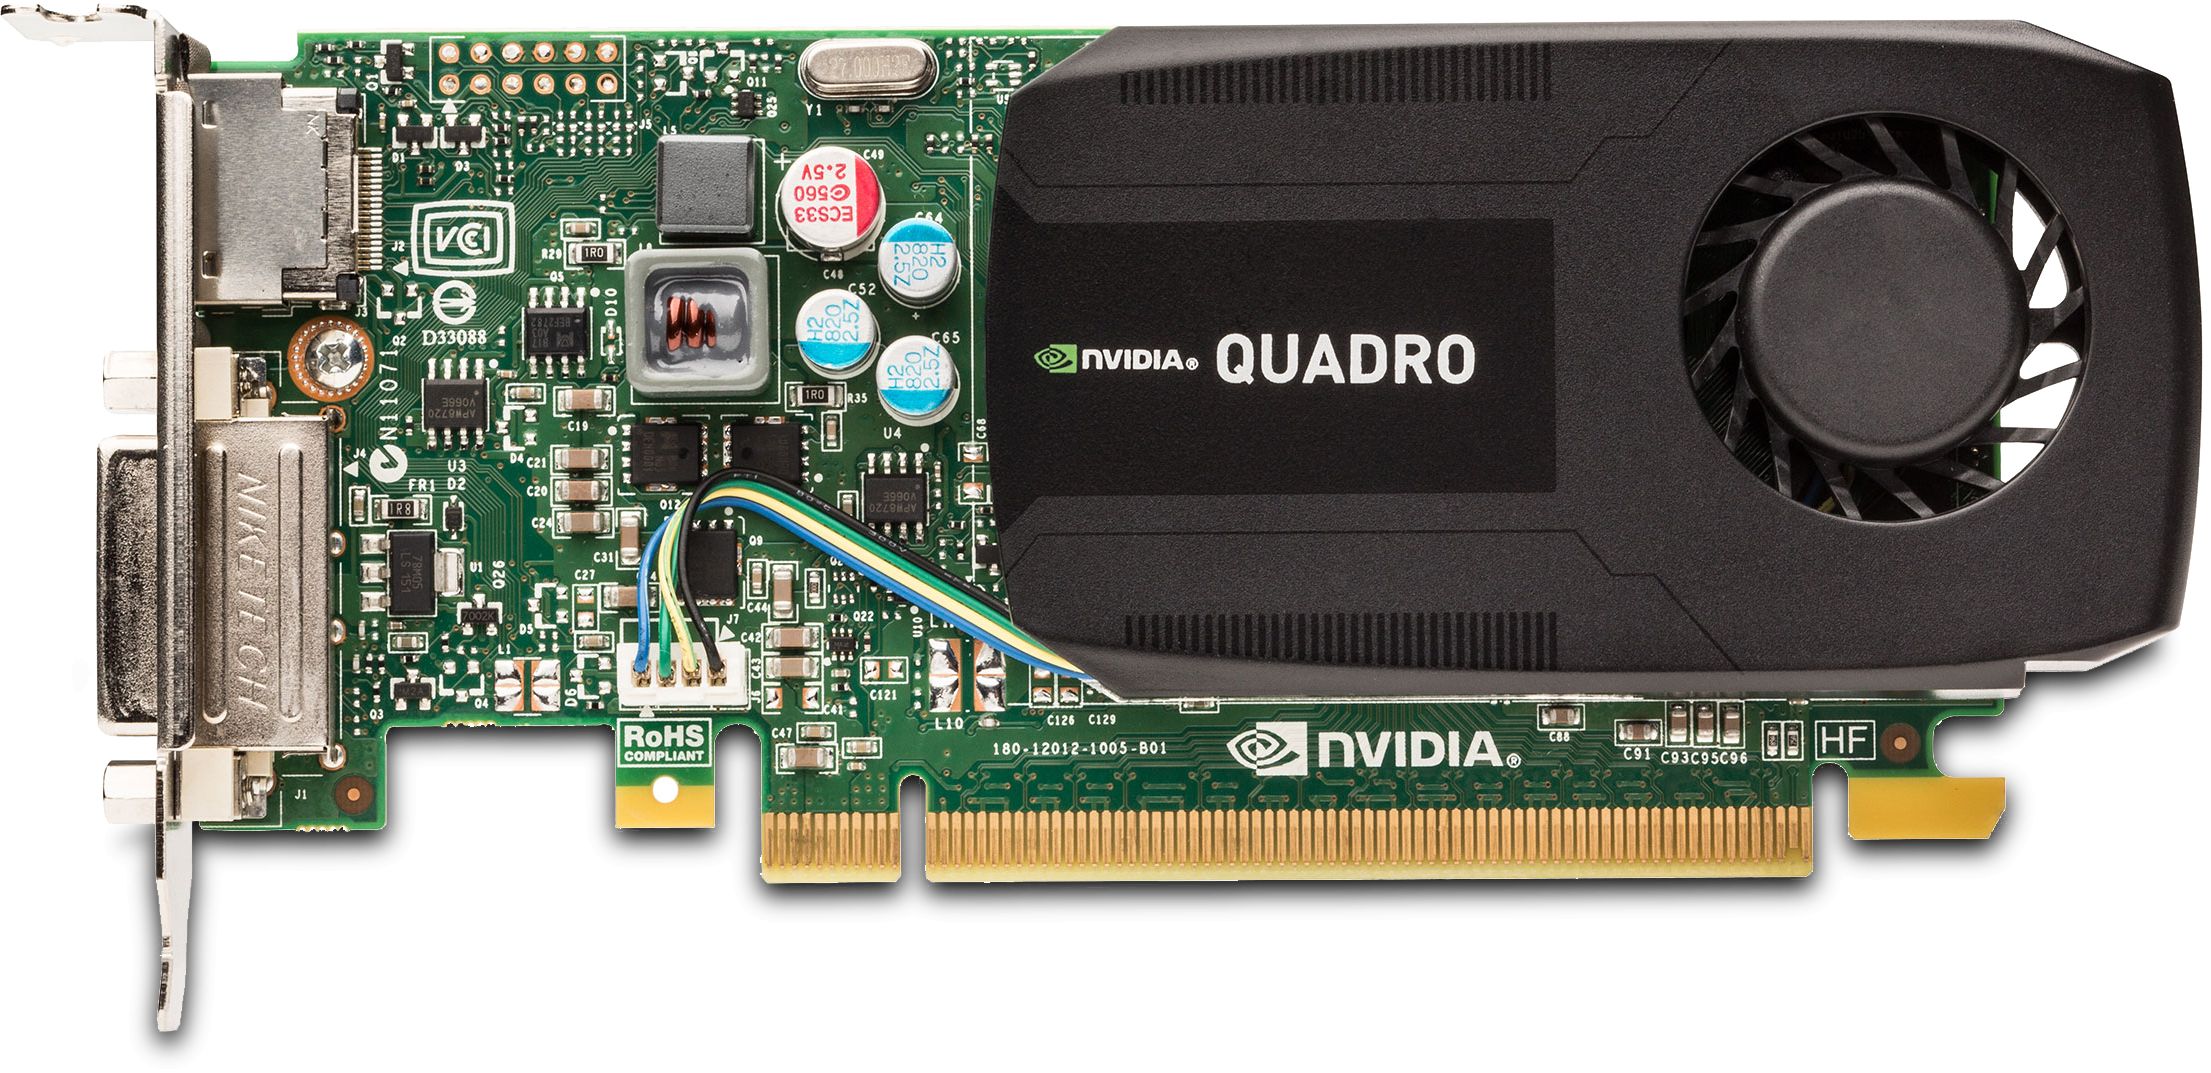 Nvidia Quadro K600 I 192 CUDA Cores I 29Gb/s I 1Gb GDDR I 128 Bits